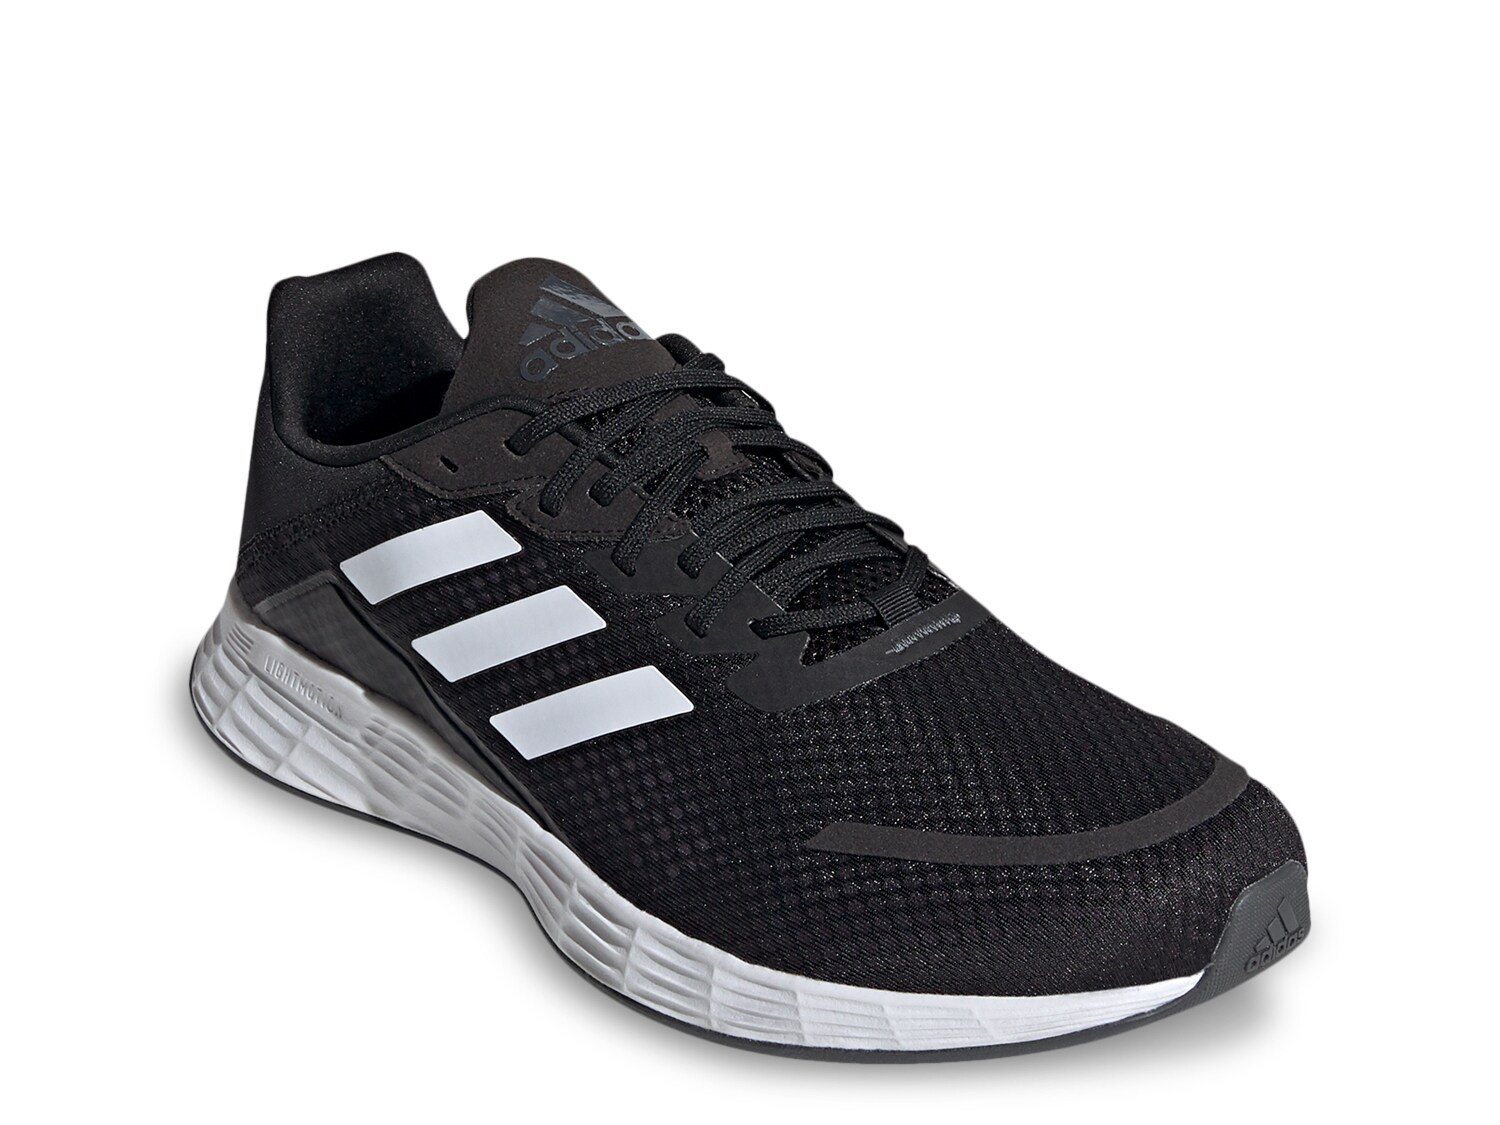 men's adidas duramo sl running shoes